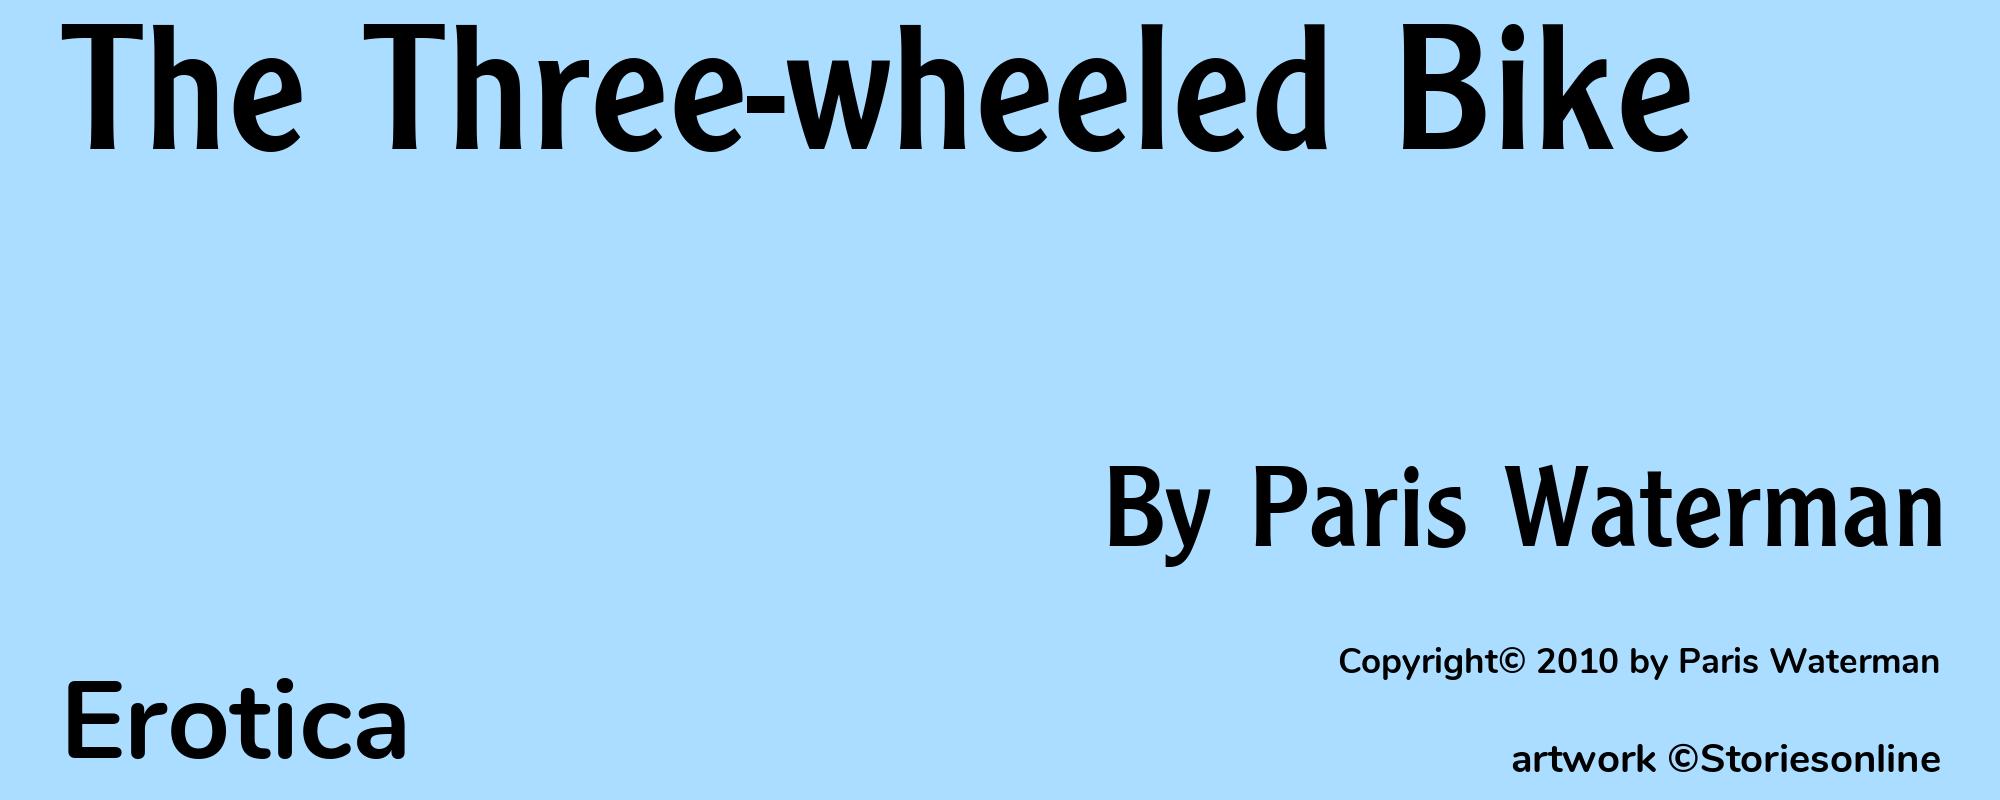 The Three-wheeled Bike - Cover